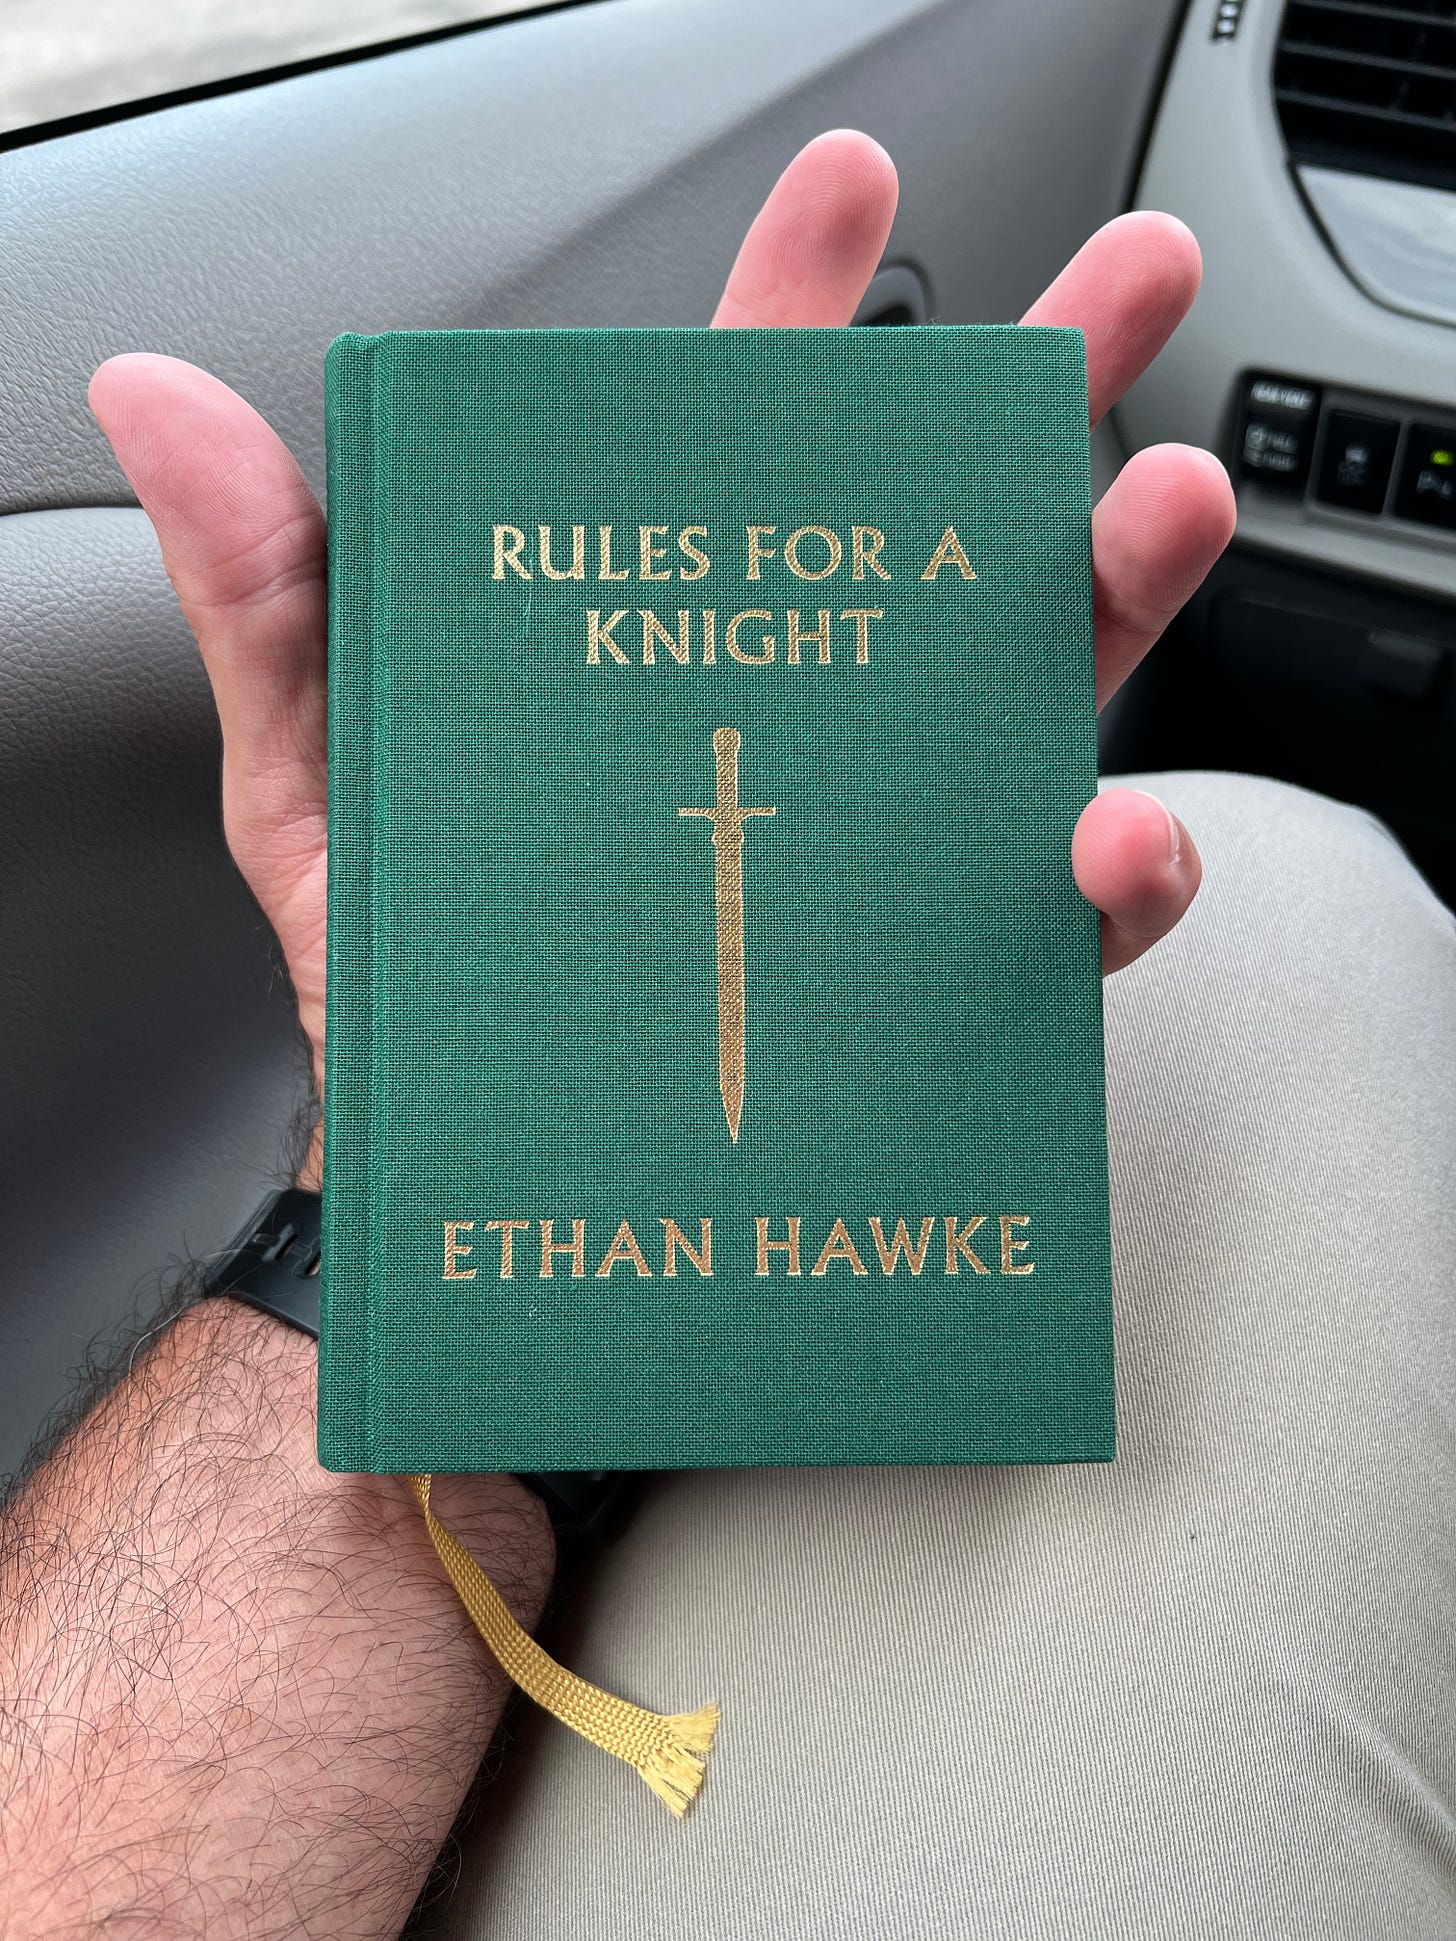 Rules for a knight - ethan hawke - daniel bertorelli